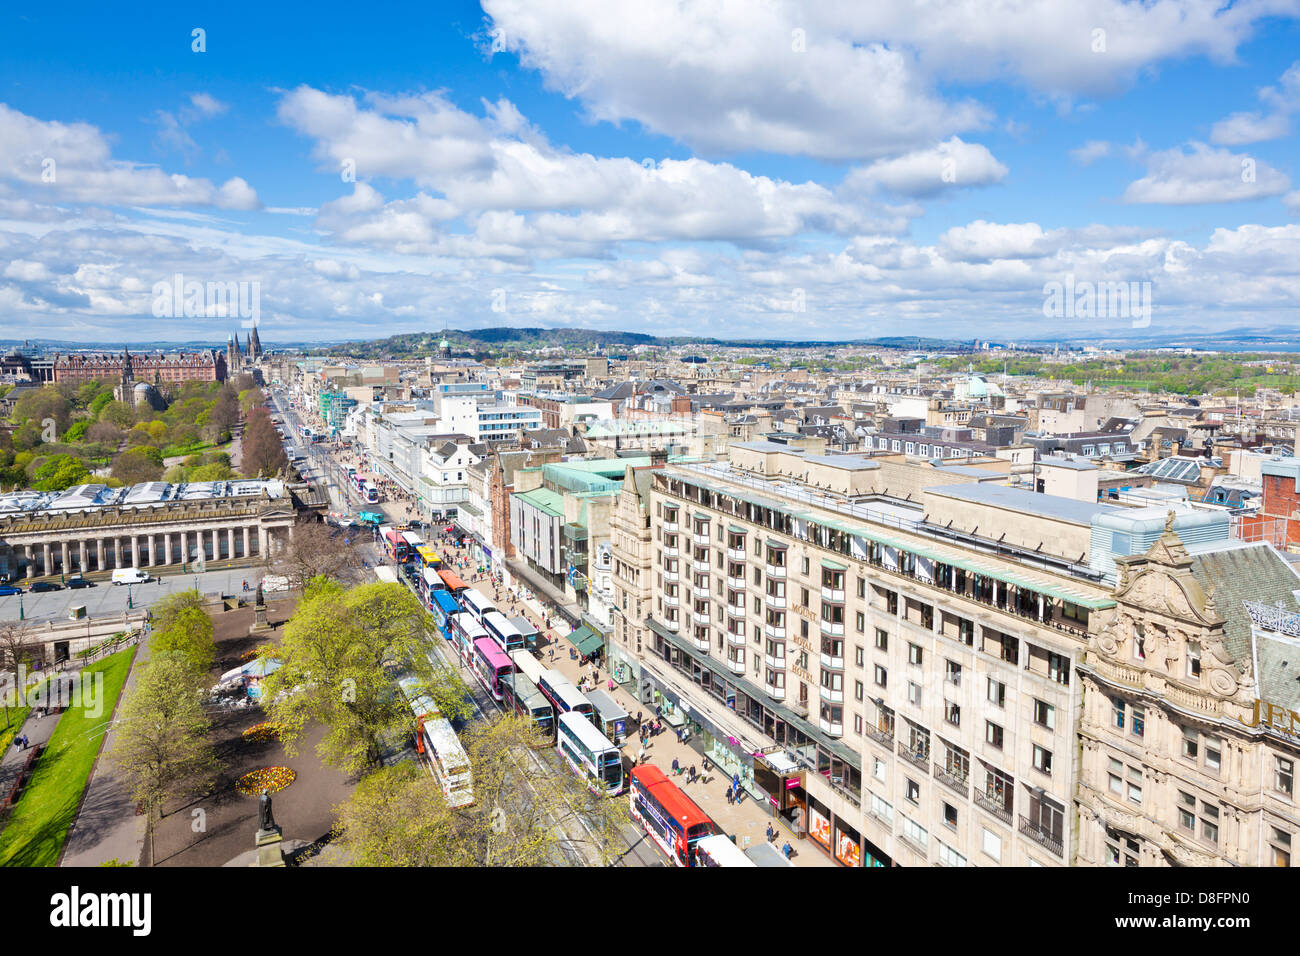 Ansicht der Princes Street, Edinburgh Stadtzentrum Edinburgh Midlothian Schottland Großbritannien GB EU Europa Stockfoto